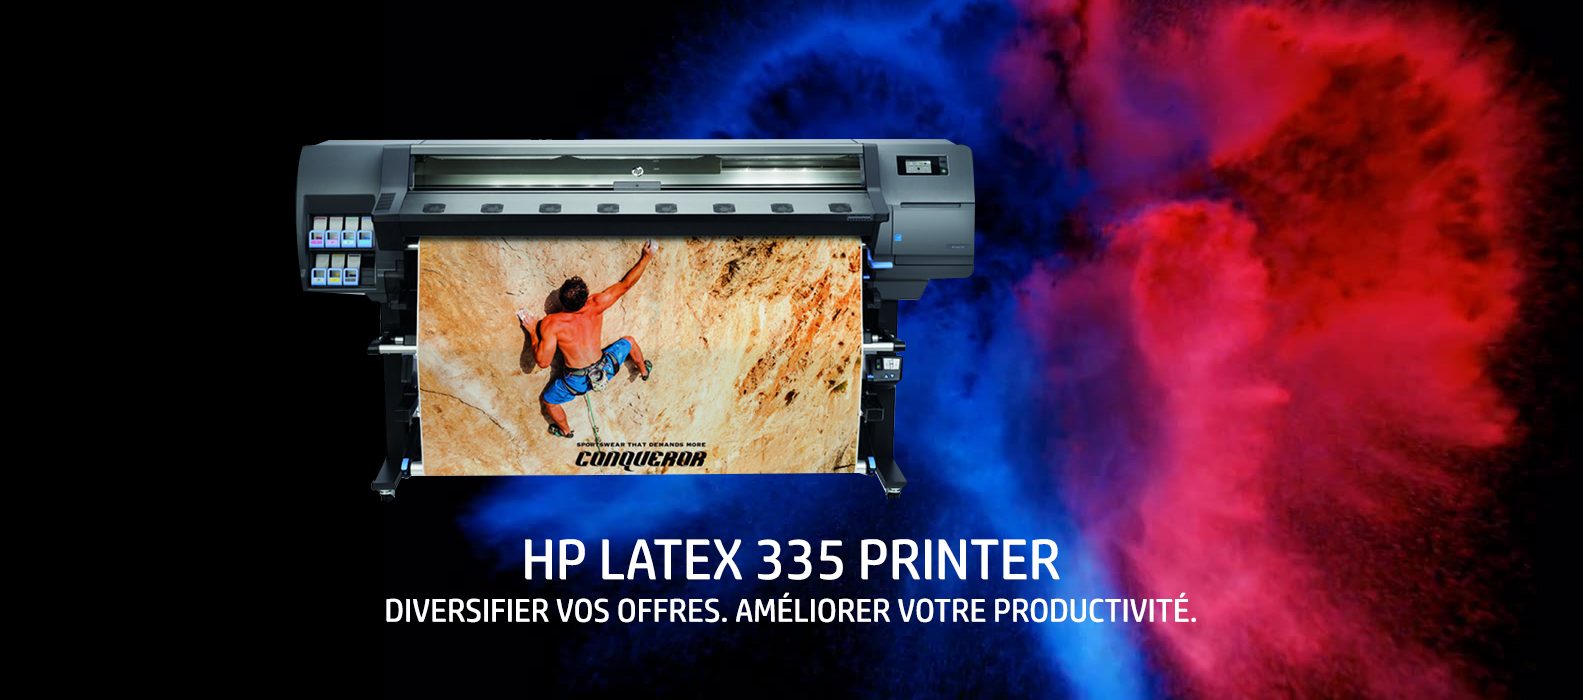 HP LATEX 335 PRINTER